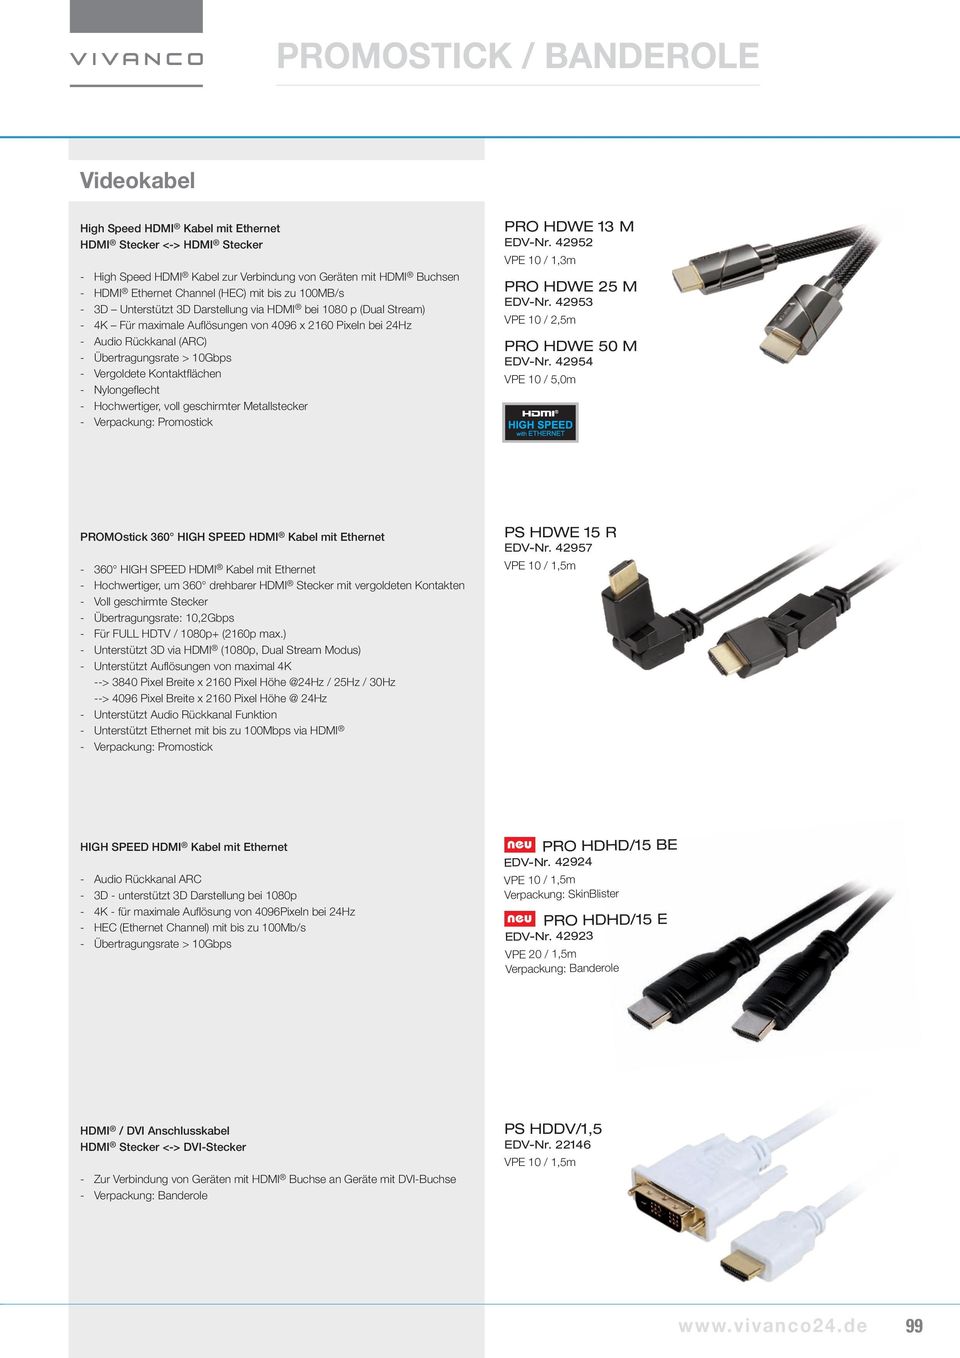 42954 PROMOstick 360 HIGH SPEED HDMI Kabel mit Ethernet - 360 HIGH SPEED HDMI Kabel mit Ethernet - Hochwertiger, um 360 drehbarer HDMI Stecker mit vergoldeten Kontakten - Voll geschirmte Stecker -